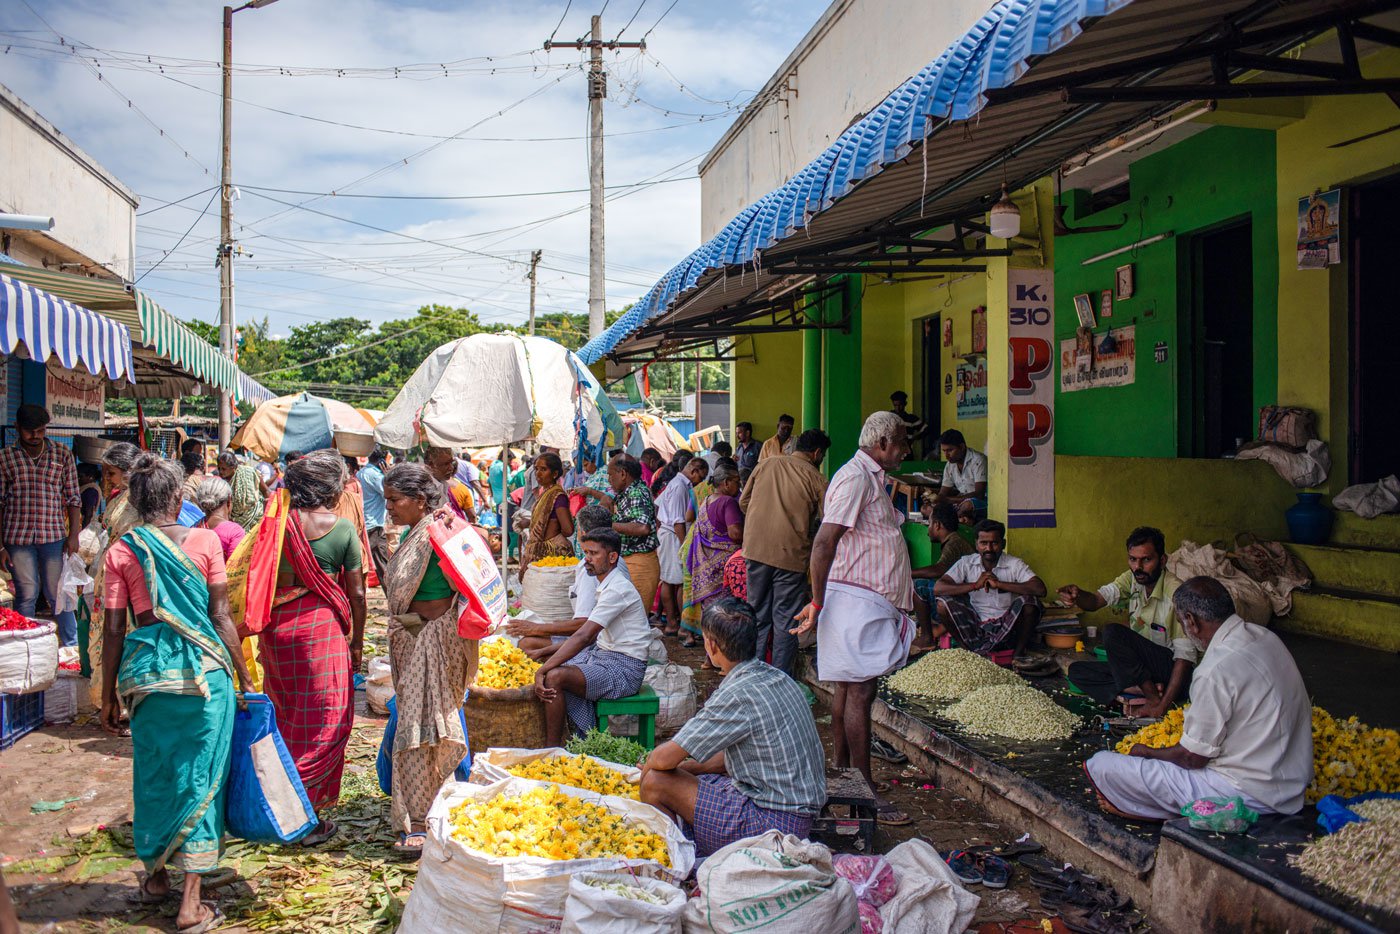 A relatively quiet day at the Mattuthavani flower market in Madurai